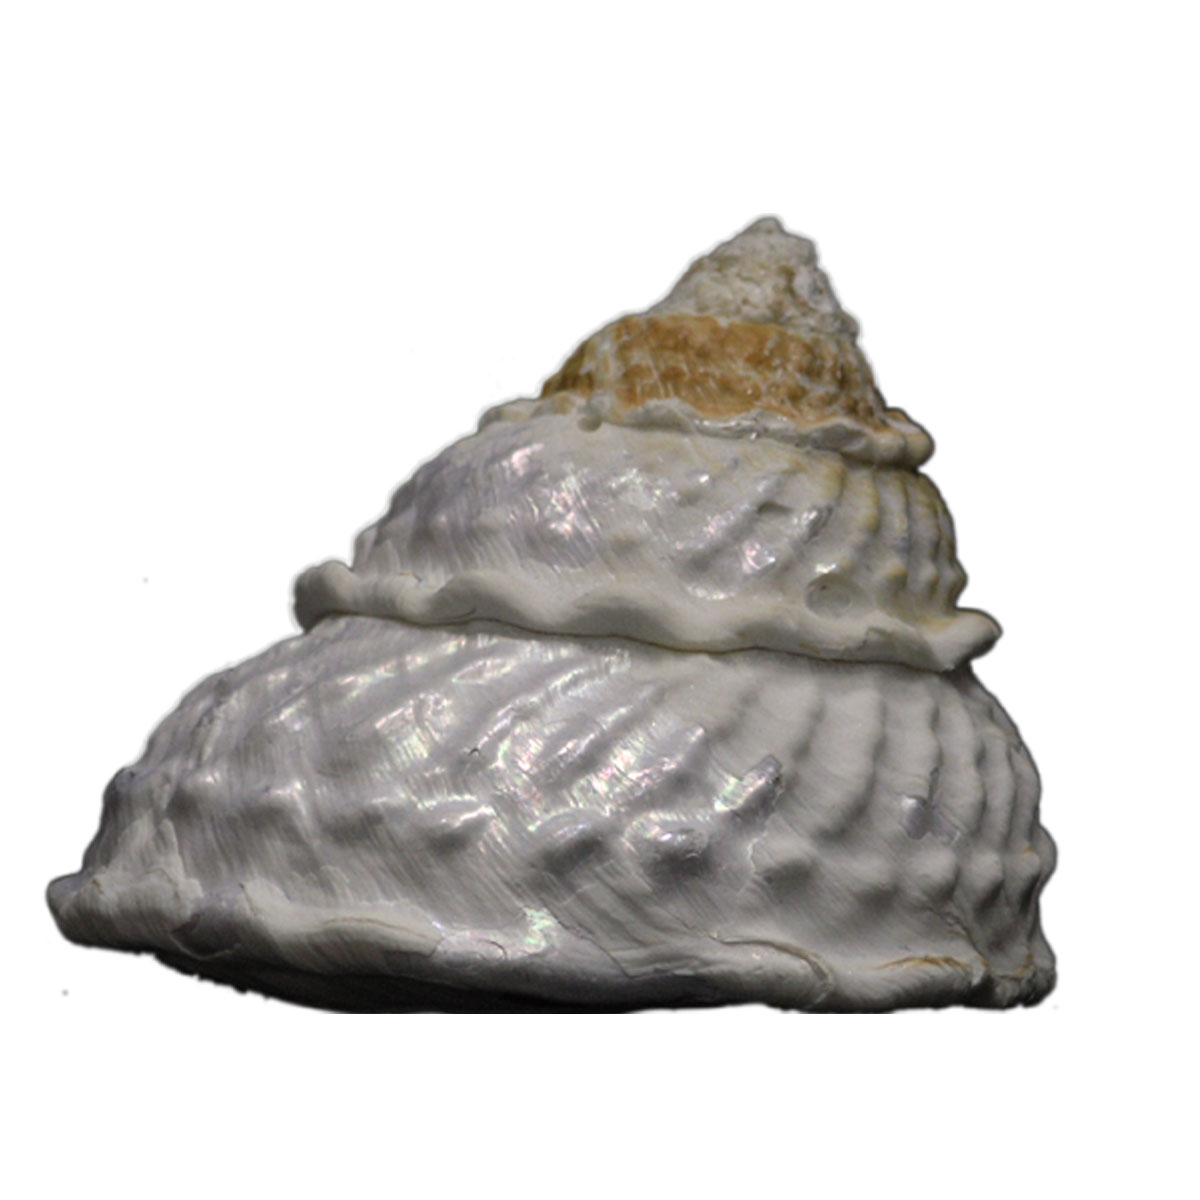 Wavy top seashell